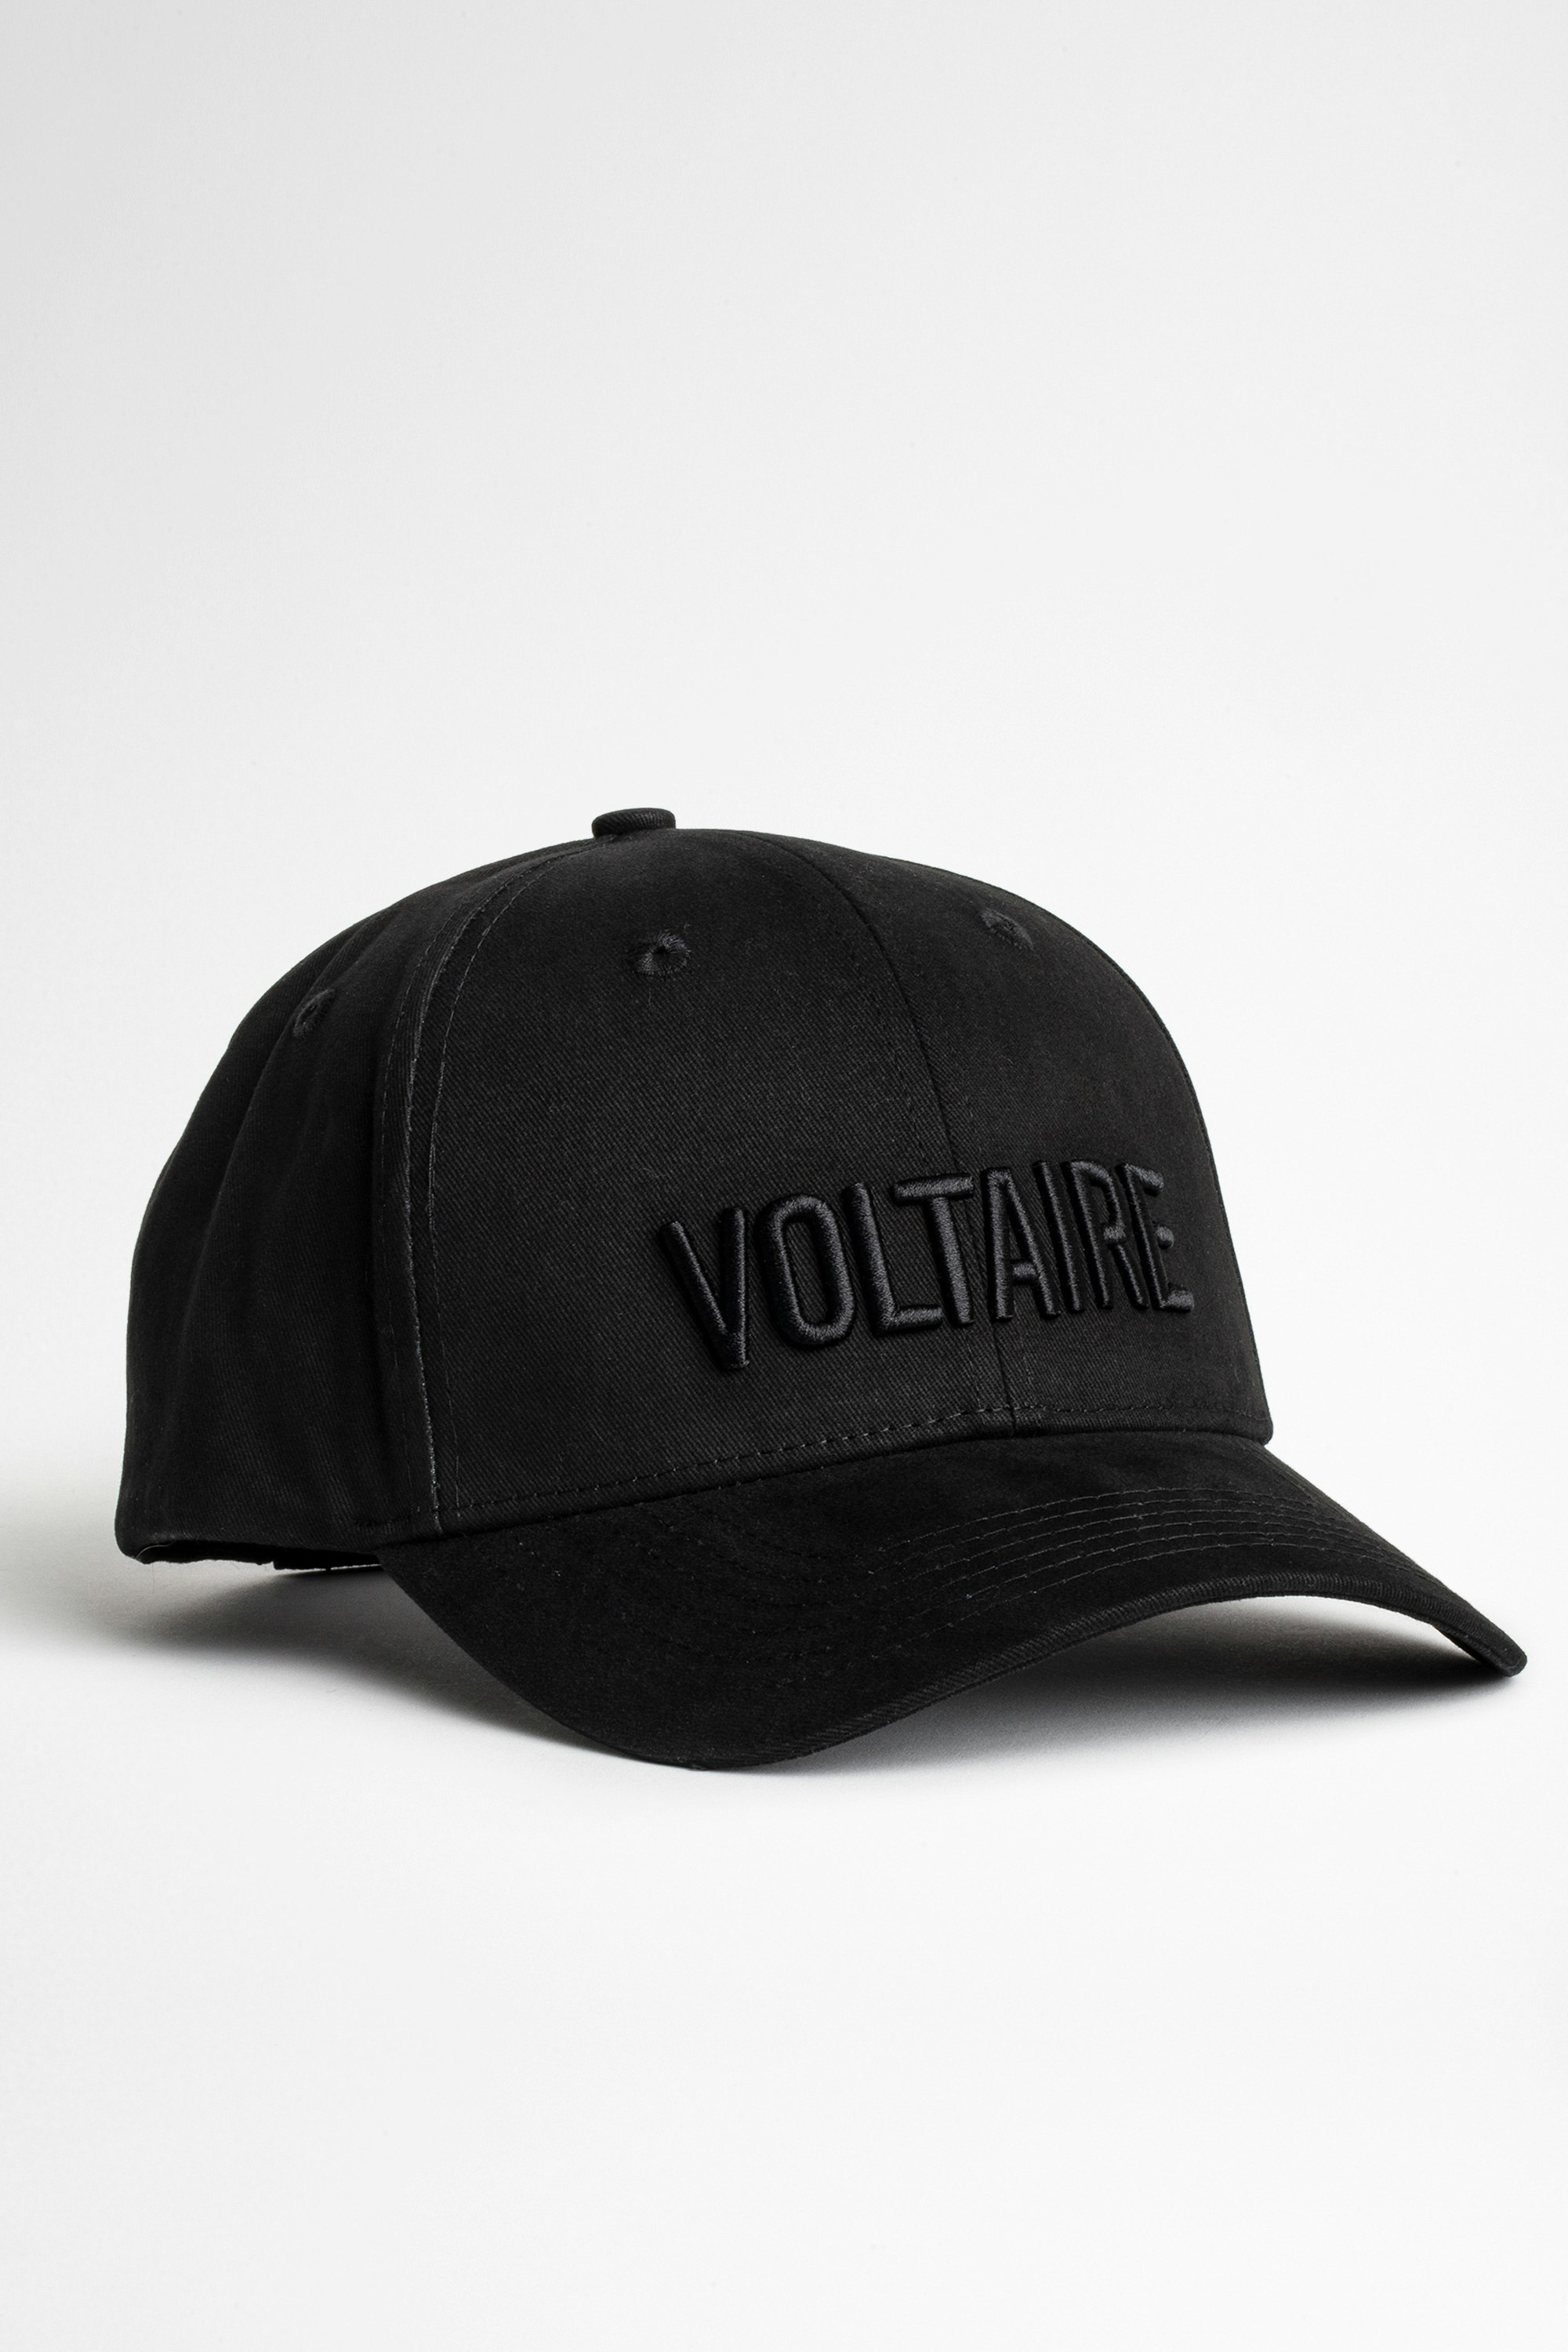 Klelia Voltaire Cap - Men’s black cap.